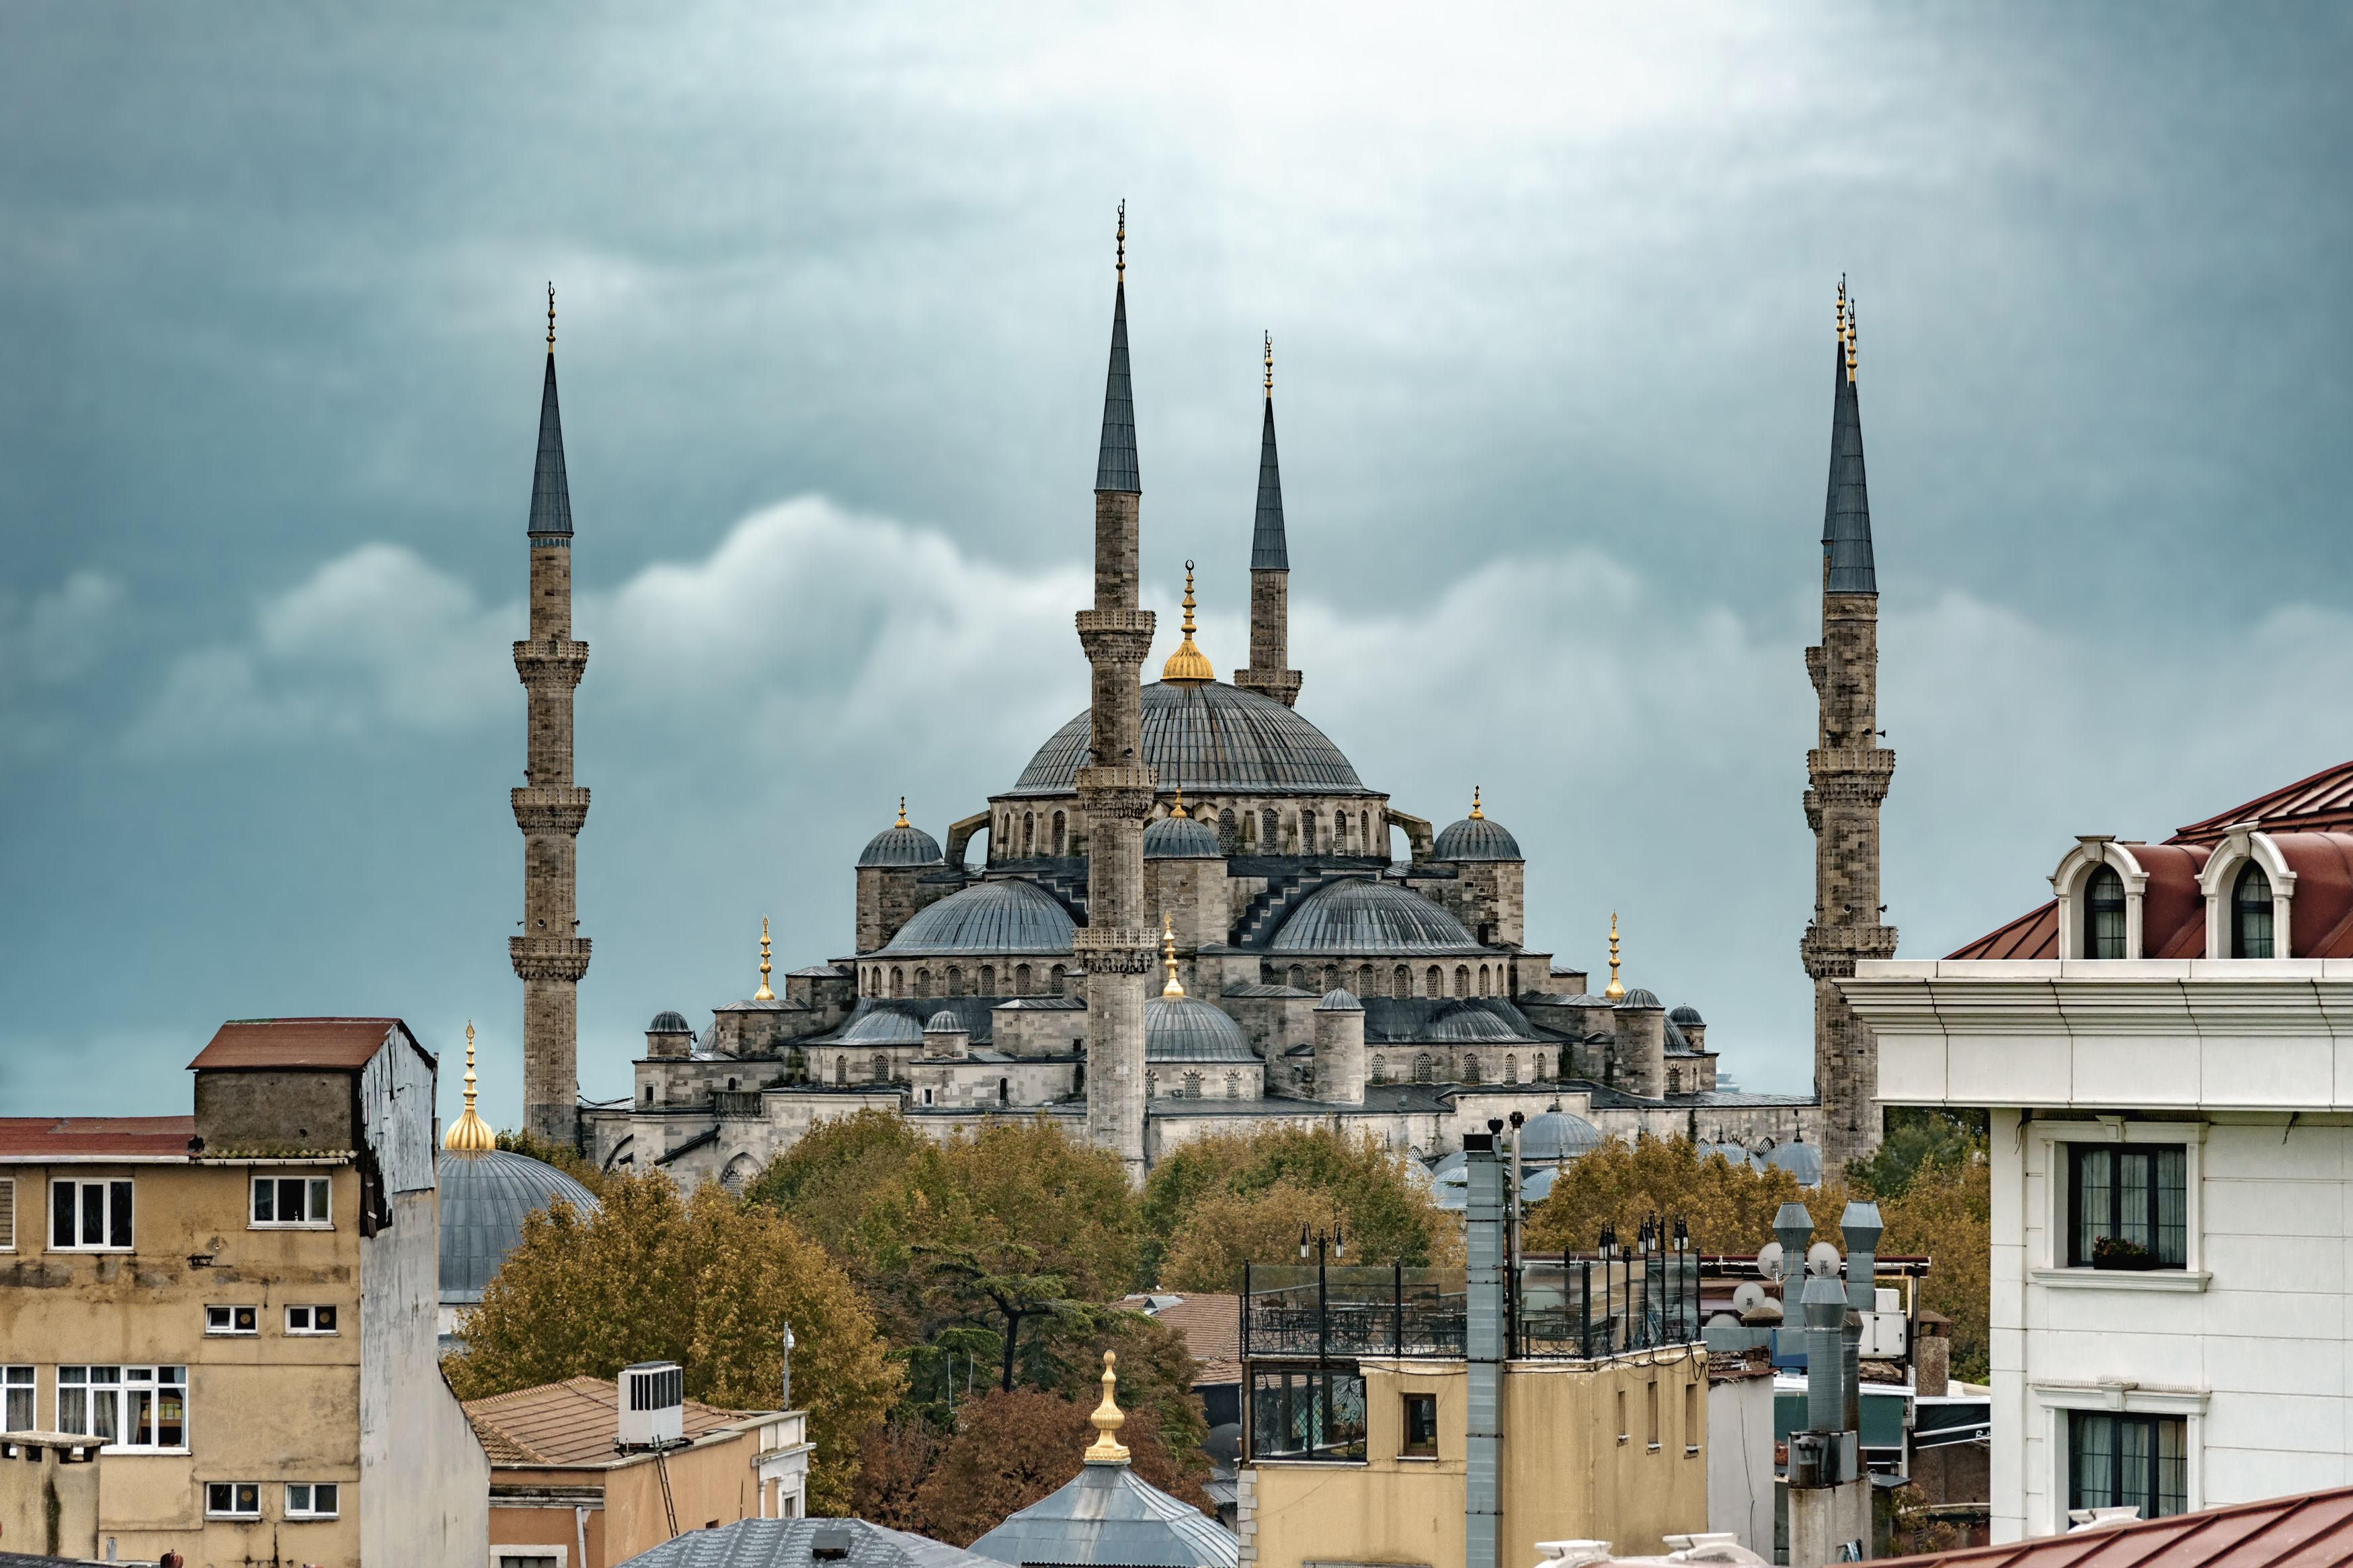 Голубая мечеть, Султанахмет, Стамбул, Турция, мусульманский, достопримечательность, экскурсия, туризм, архитектура, турецкий, Сытилин Павел